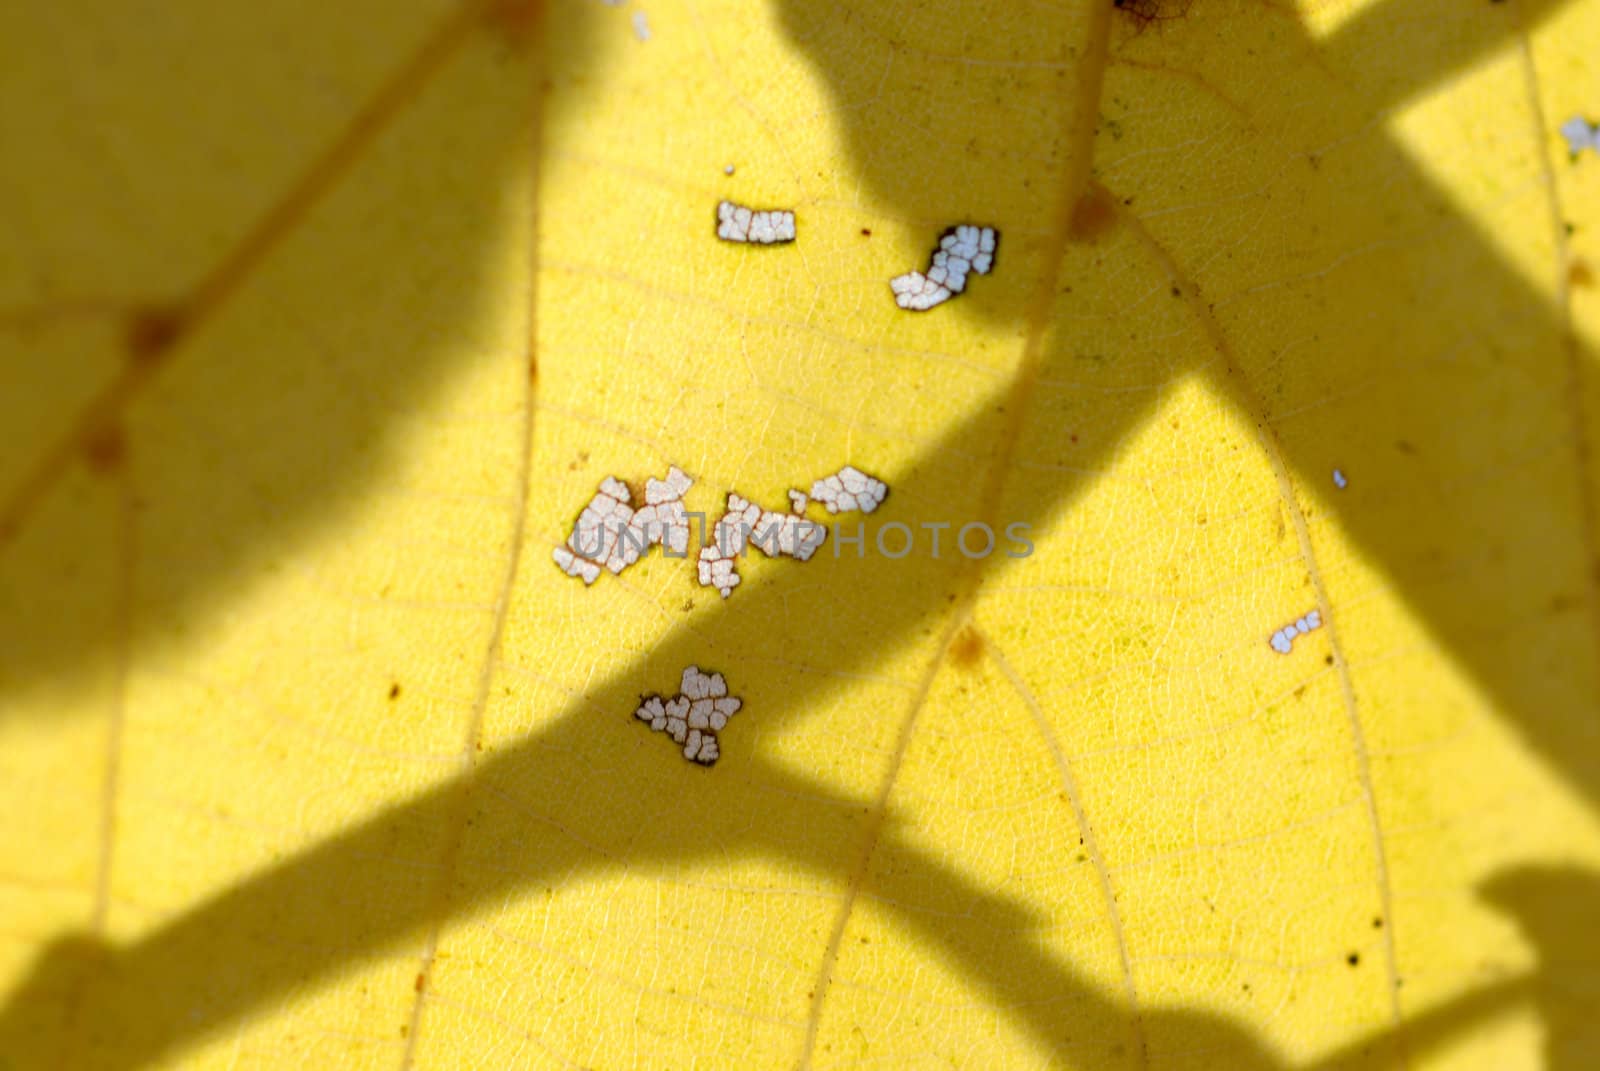 Autumn leaf on a blue sky. by wojciechkozlowski